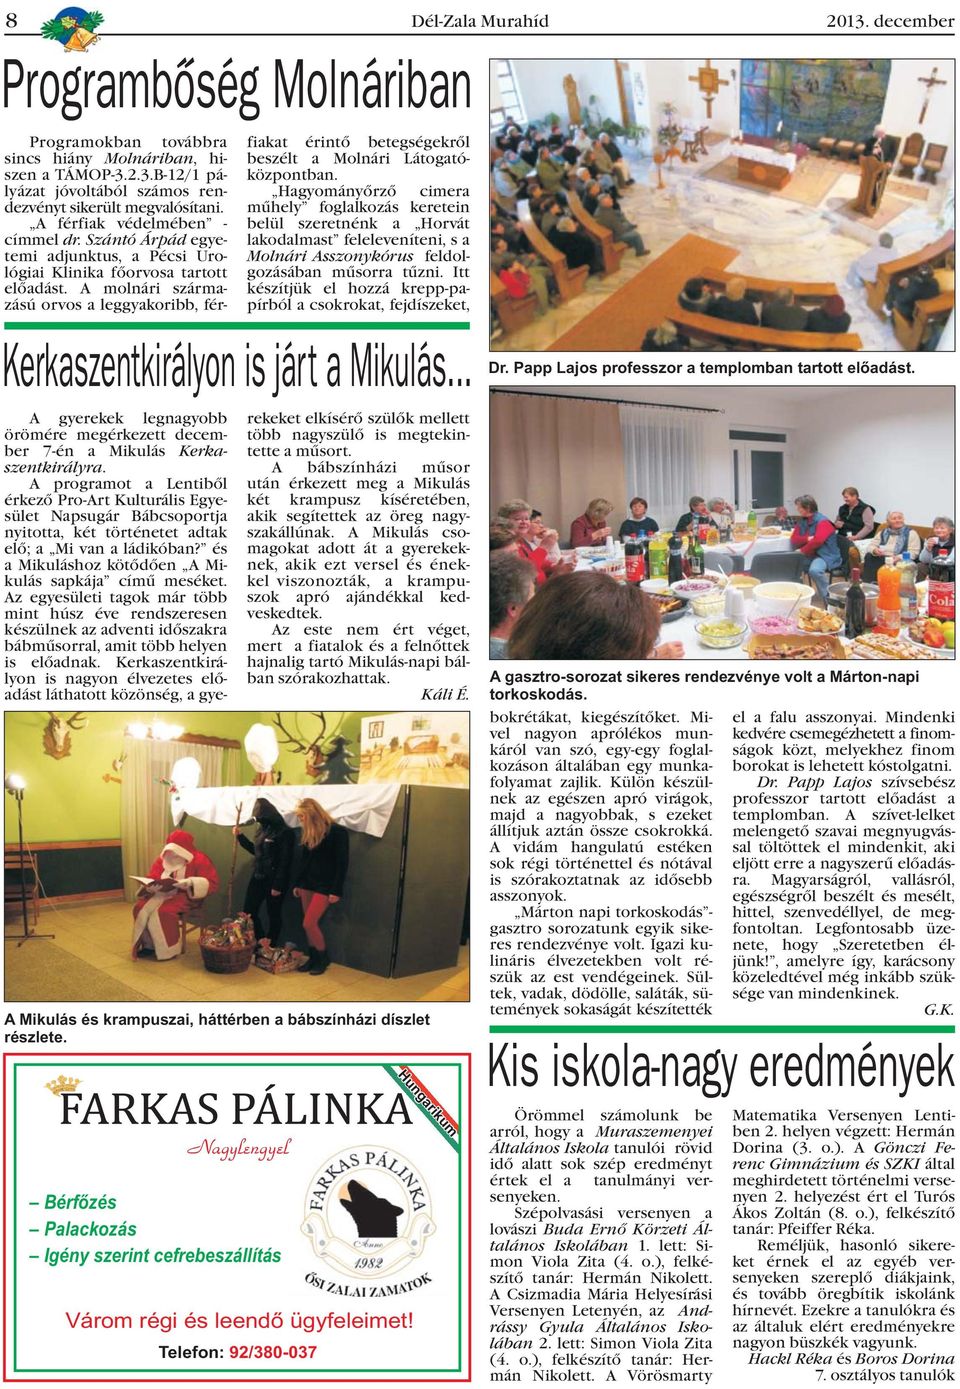 A molnári származású orvos a leggyakoribb, fér- Kerkaszentkirályon is járt a Mikulás... A gyerekek legnagyobb örömére megérkezett december 7-én a Mikulás Kerkaszentkirályra.